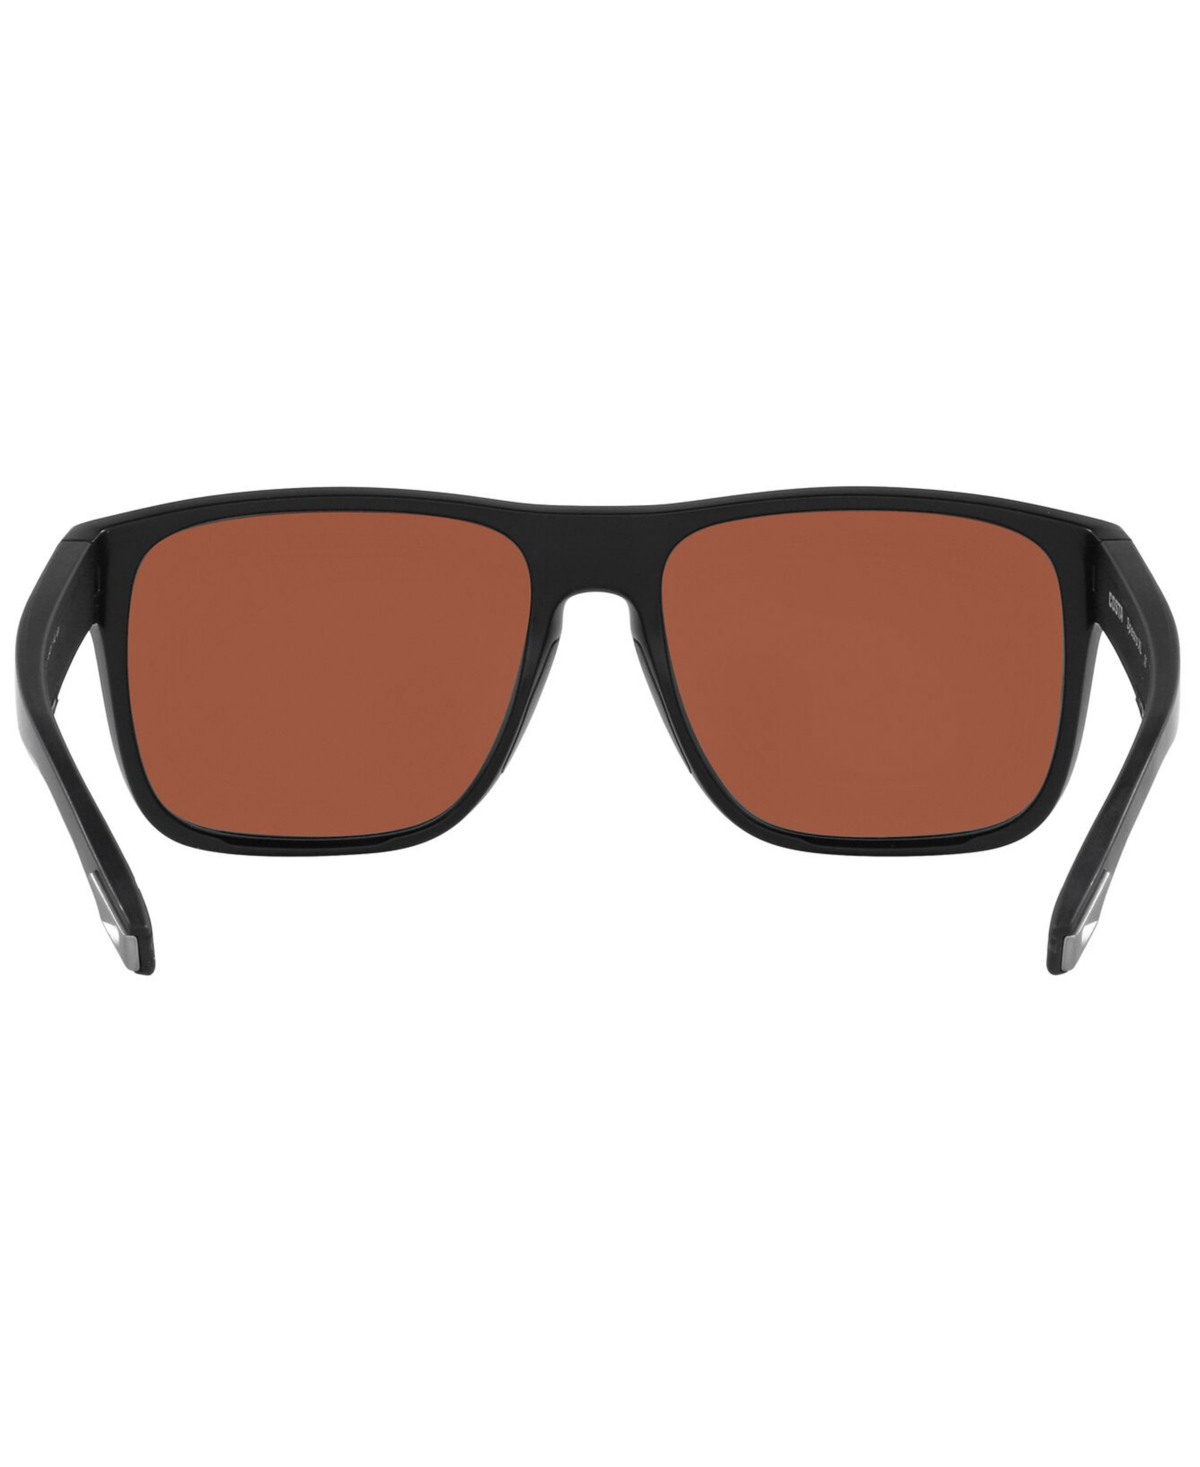 Shop Costa Del Mar Spearo Xl Polarized Sunglasses, 6s9013 59 In Matte Black,green Mirror G